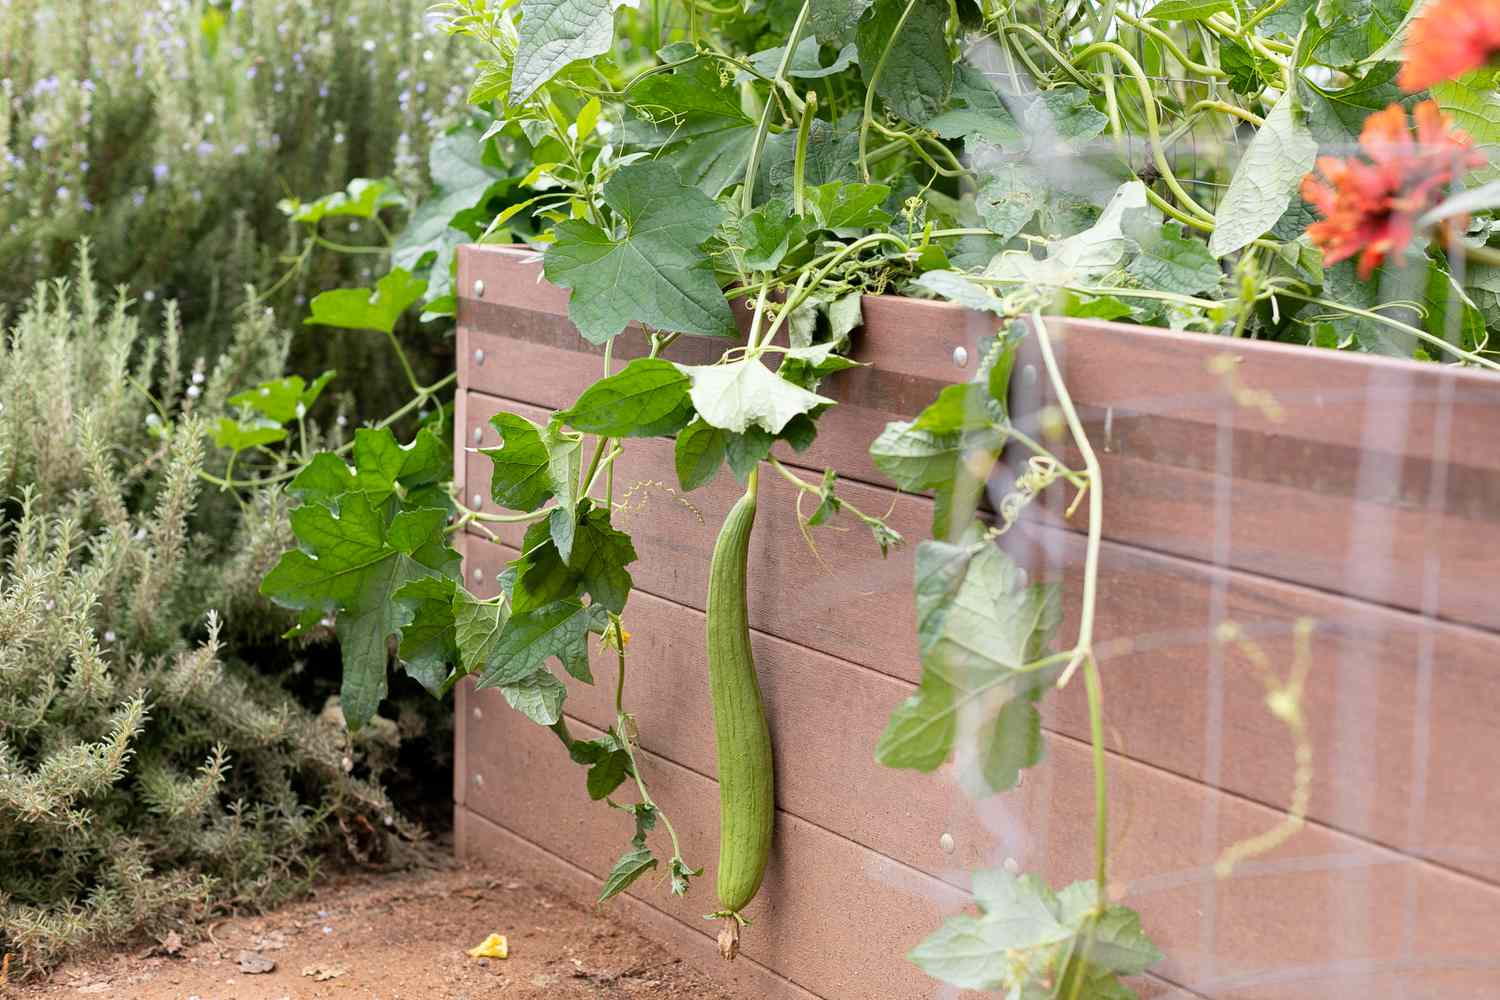 Luffa-Pflanze mit Kürbis an einer Ranke, die über einem erhöhten Gartenkasten hängt